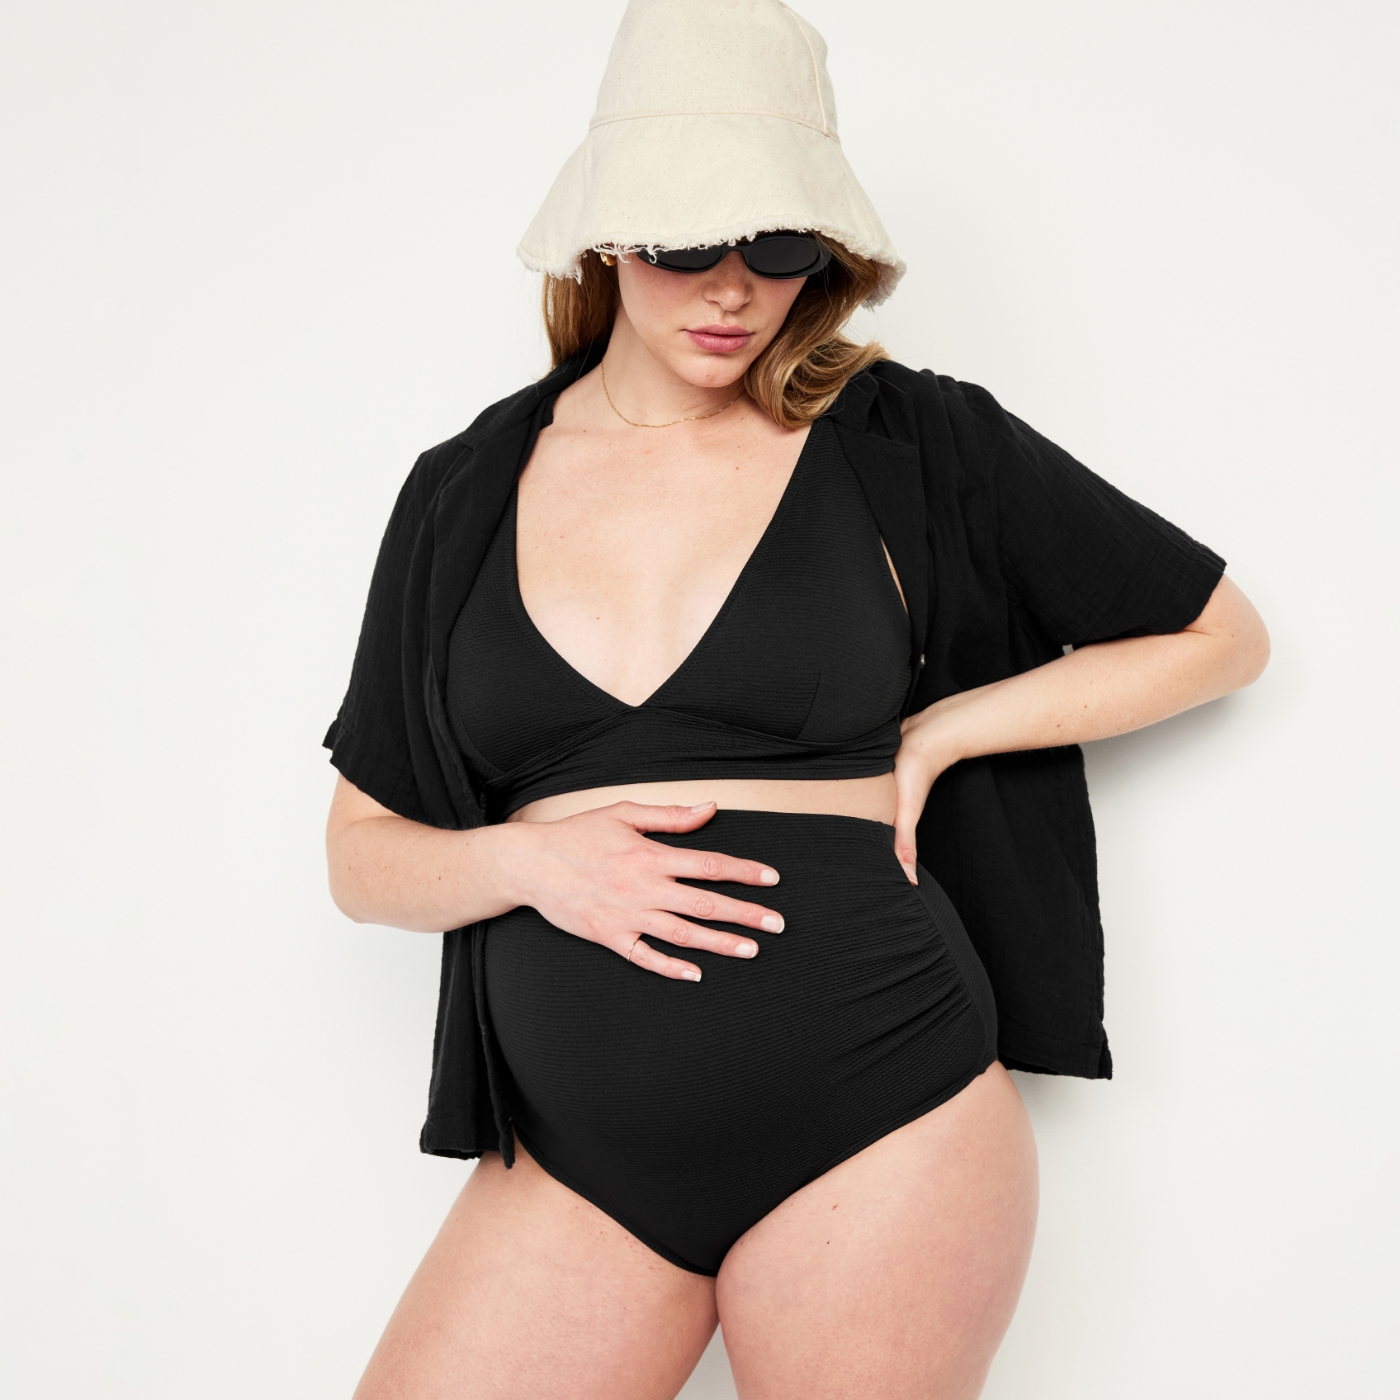 Une femme enceinte porte une tenue de plage.